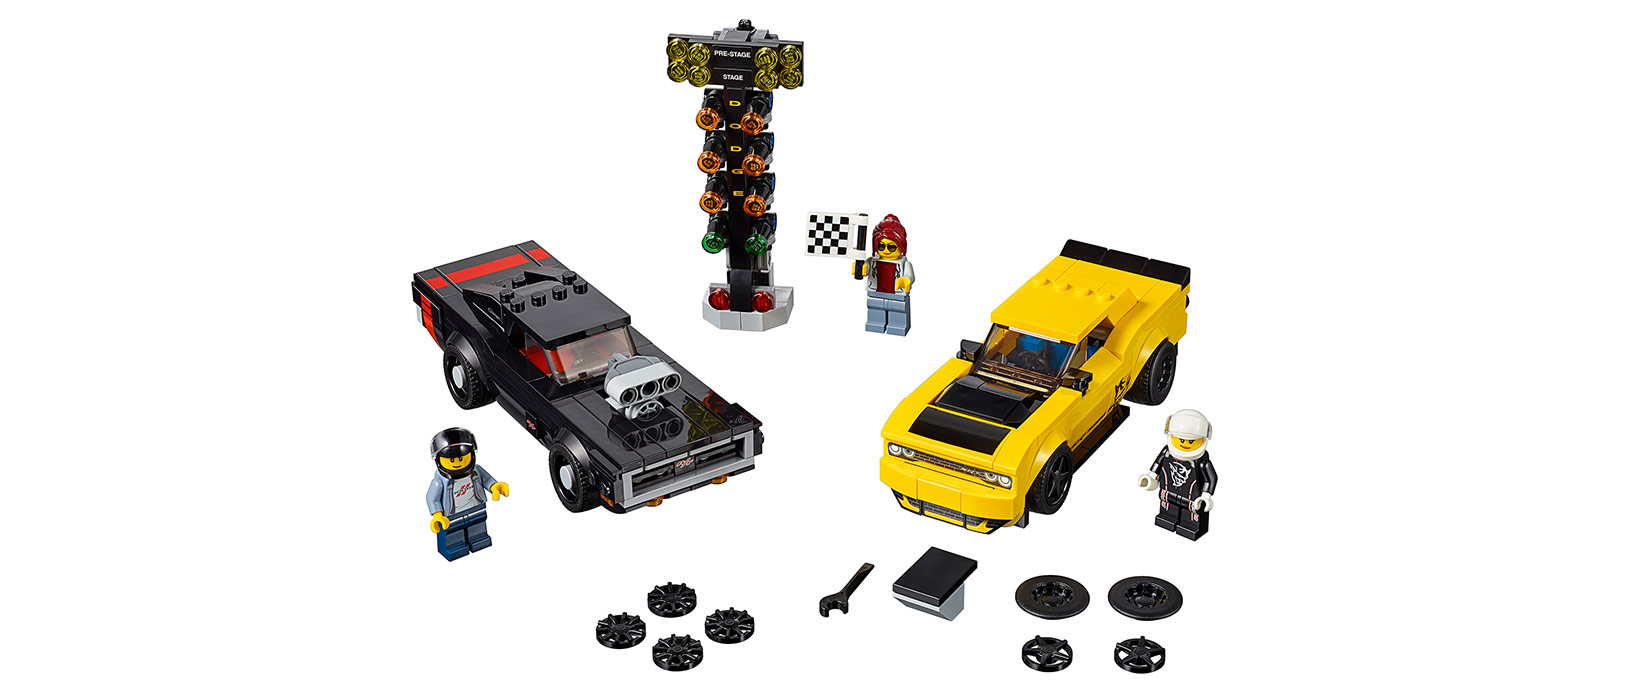 Dodge LEGO set